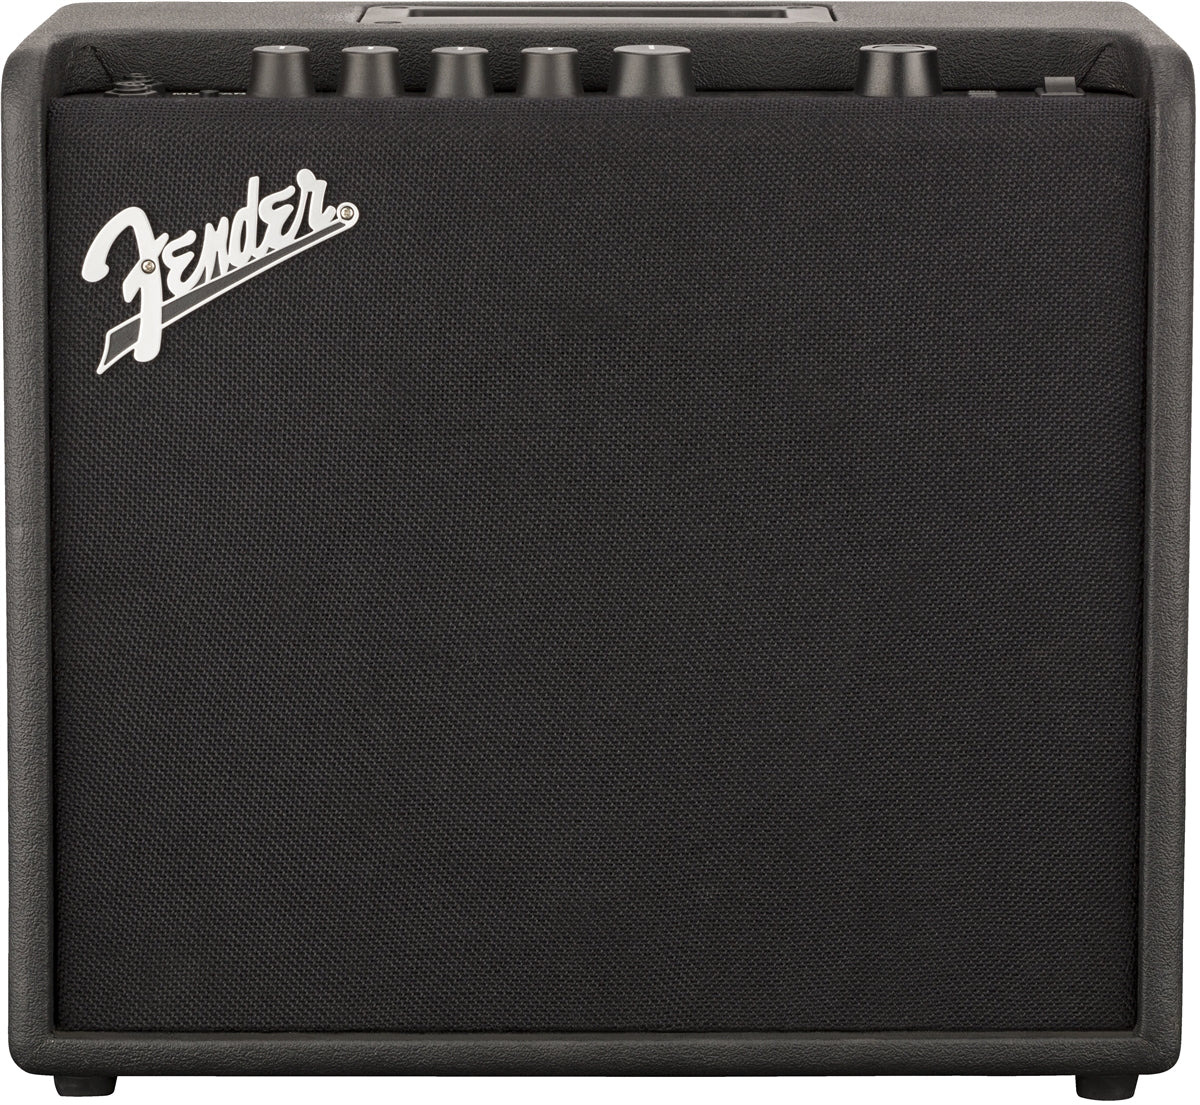 FENDER #2311100000 Mustang LT25 Digital Electric Guitar Amp